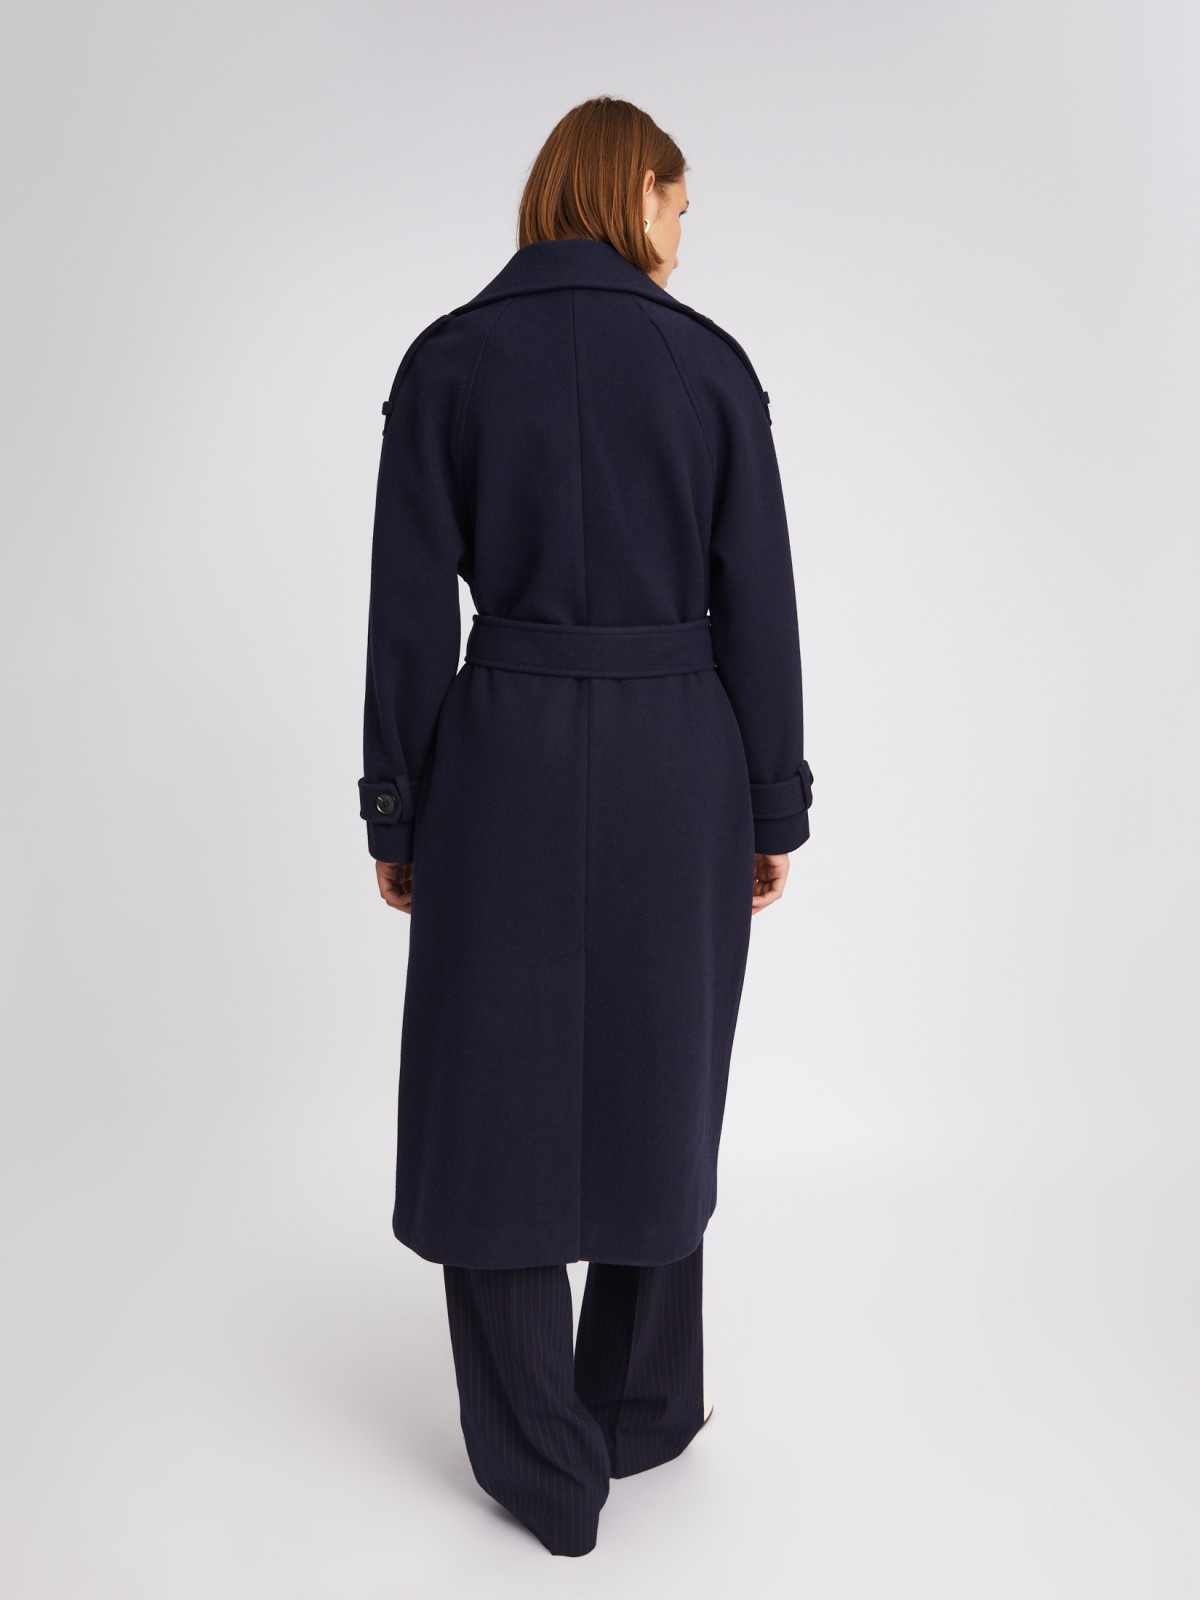 Длинное пальто-тренч без утеплителя на пуговицах с рукавами реглан и поясом zolla 023335866114, цвет синий, размер S - фото 6